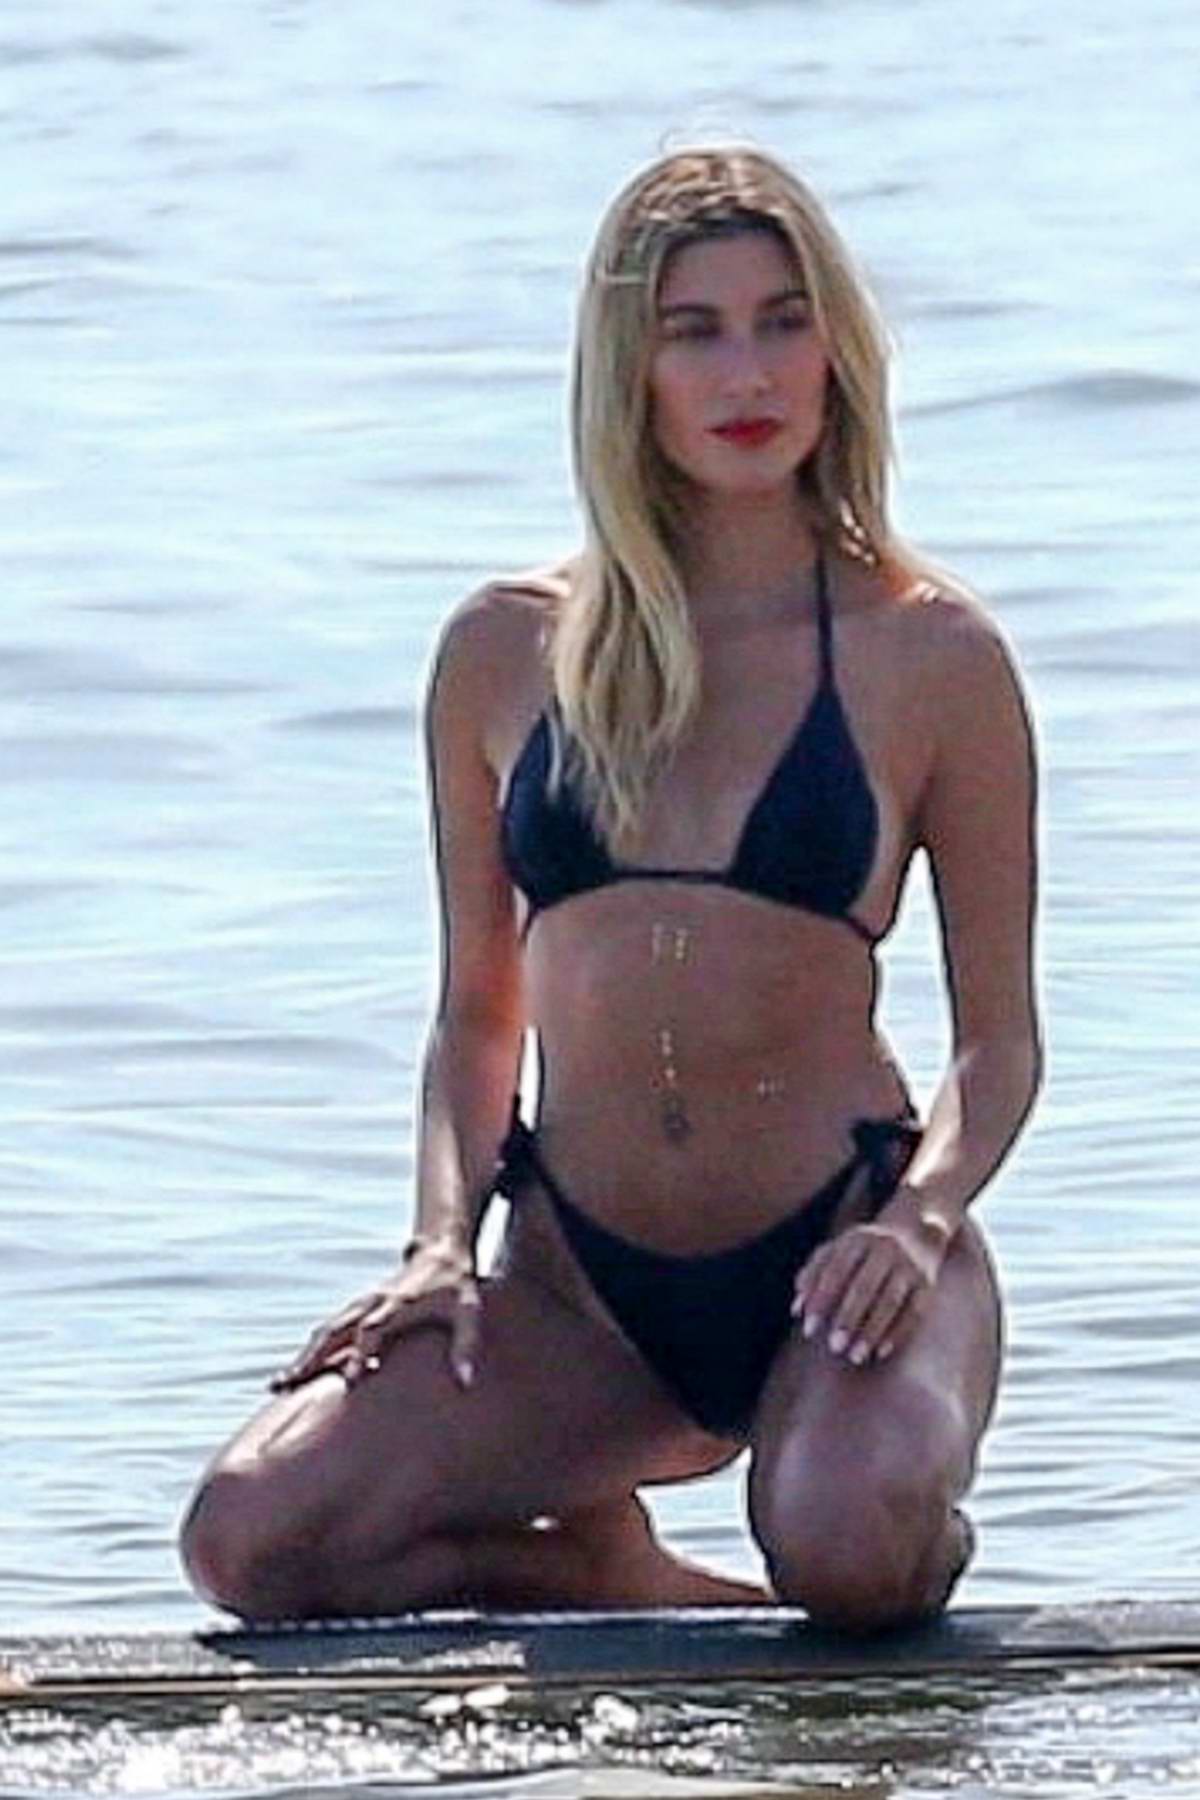 hailey bieber poses in a blue bikini during a beach photoshoot at key